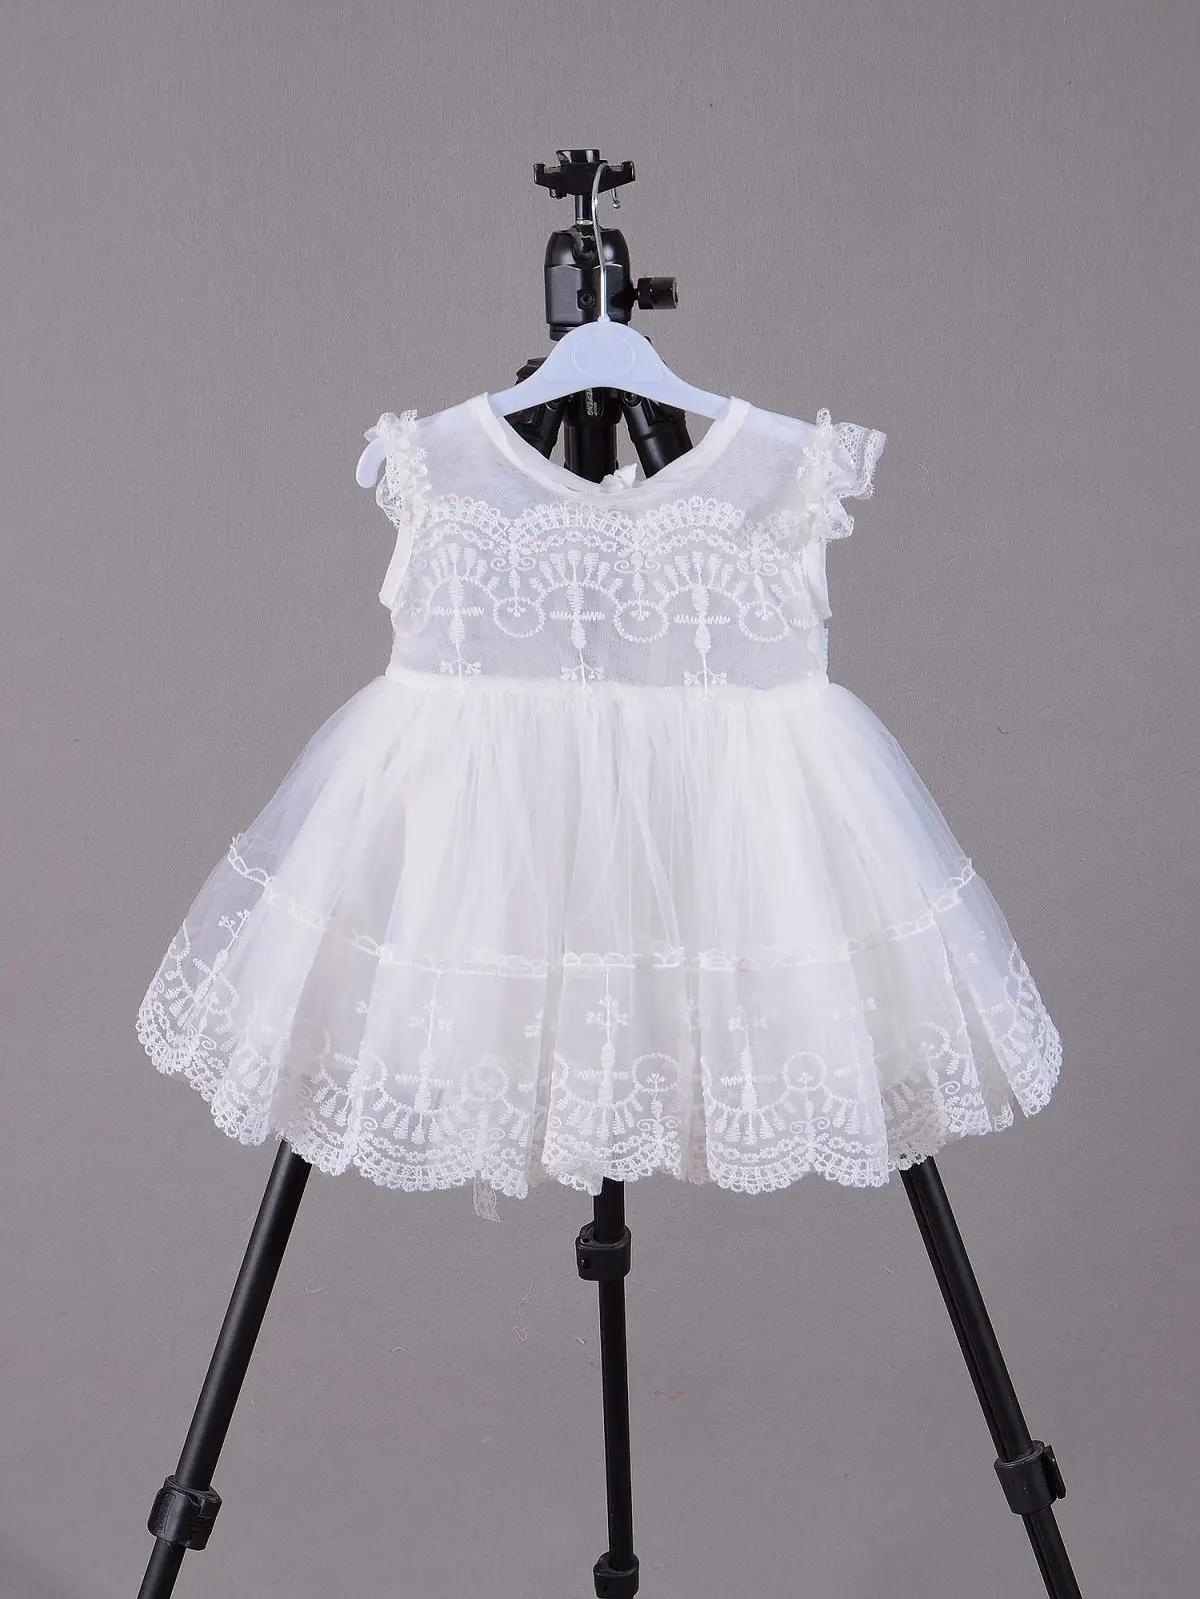 Г. Летнее платье для маленьких девочек тонкая одежда для маленьких девочек на день рождения, Vestido, 1 год 3, 6, 8, 12, 18, 24 месяца, RBF184035